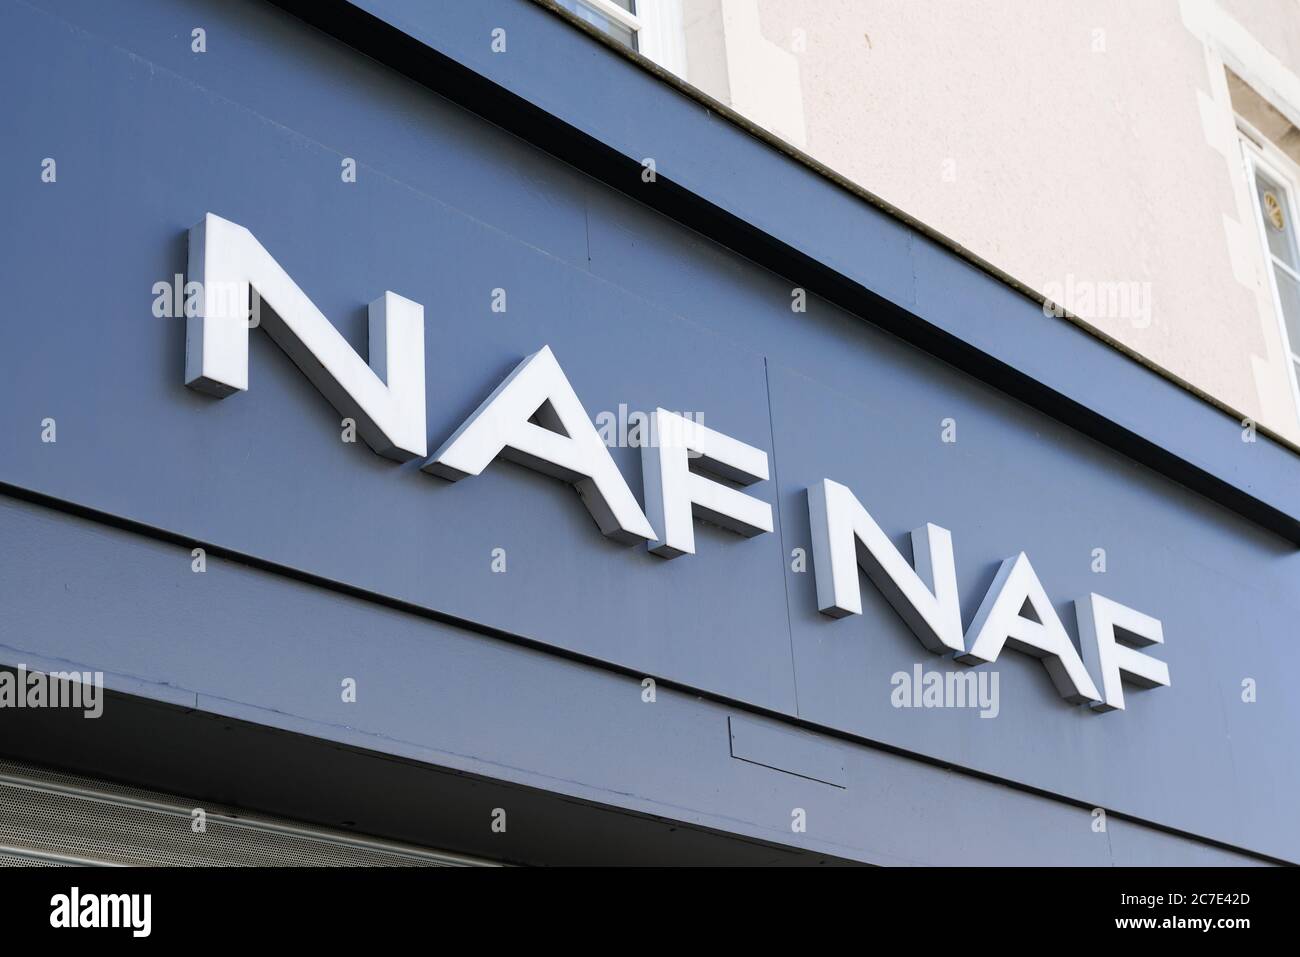 Naf naf hi-res stock photography and images - Alamy